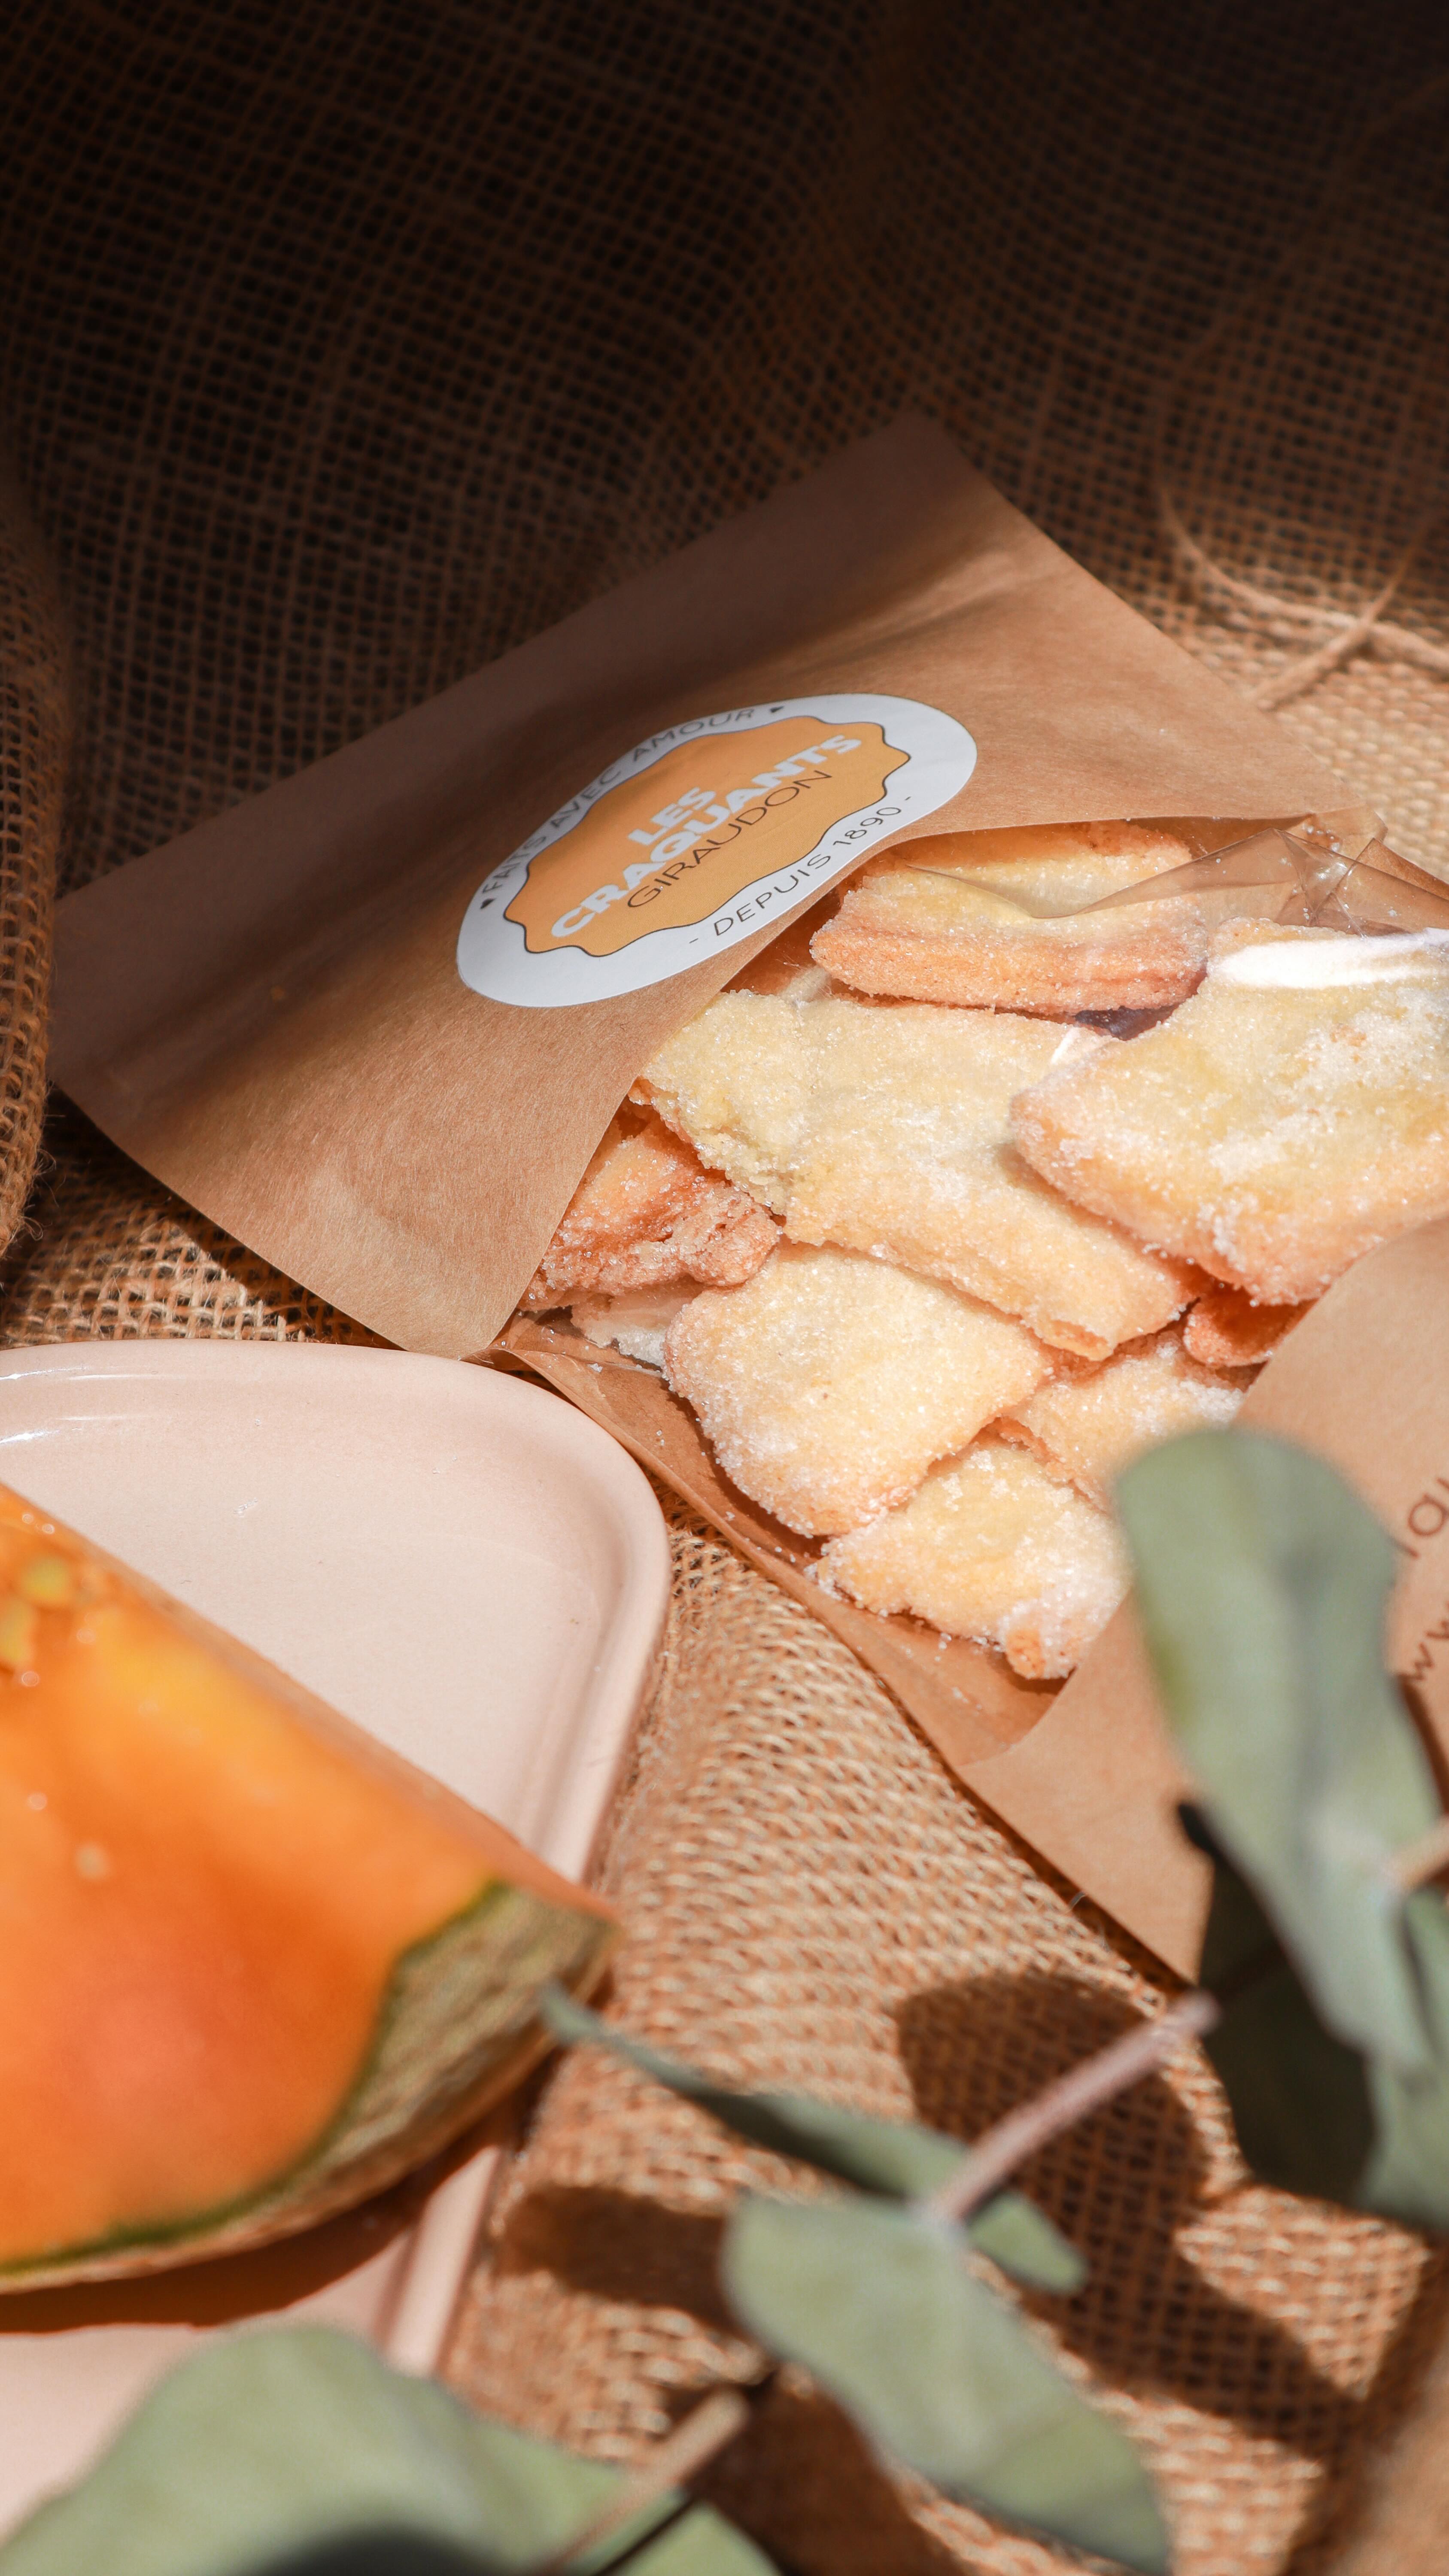 Cookies, soleil et chant des cigales... la recette parfaite pour une journée d’été. ☀️

🍪 Faits maison à Gémenos (13)
📍Disponibles dans plusieurs points de vente
💌 Plus d’infos sur notre site web (lien dans notre bio)

#CookiesGiraudon #Bonheur #CookiesAvecAmour #GourmandiseAuthentique #homemadewithlove #CookiesArtisanaux #FaitAvecAmour #Gémenos #CuisineArtisanale #marseille #MadeInFrance